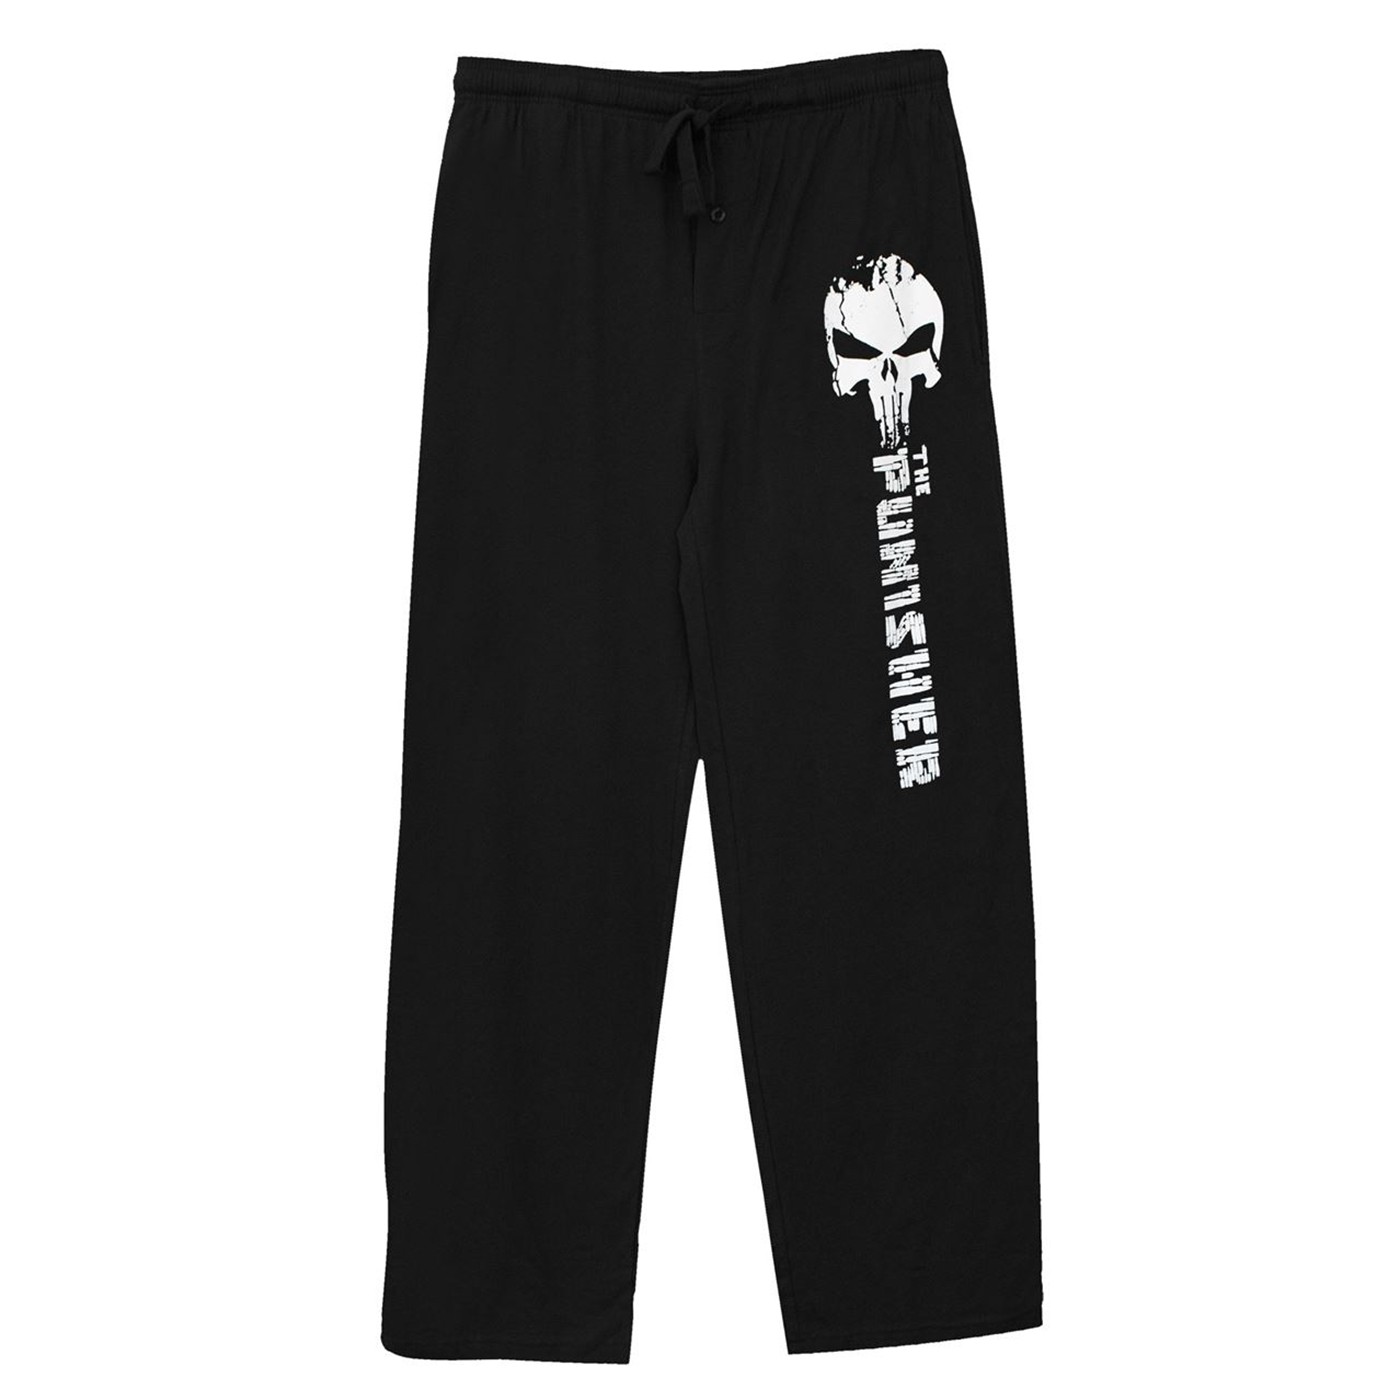 The Punisher Black Unisex Sleep Pants